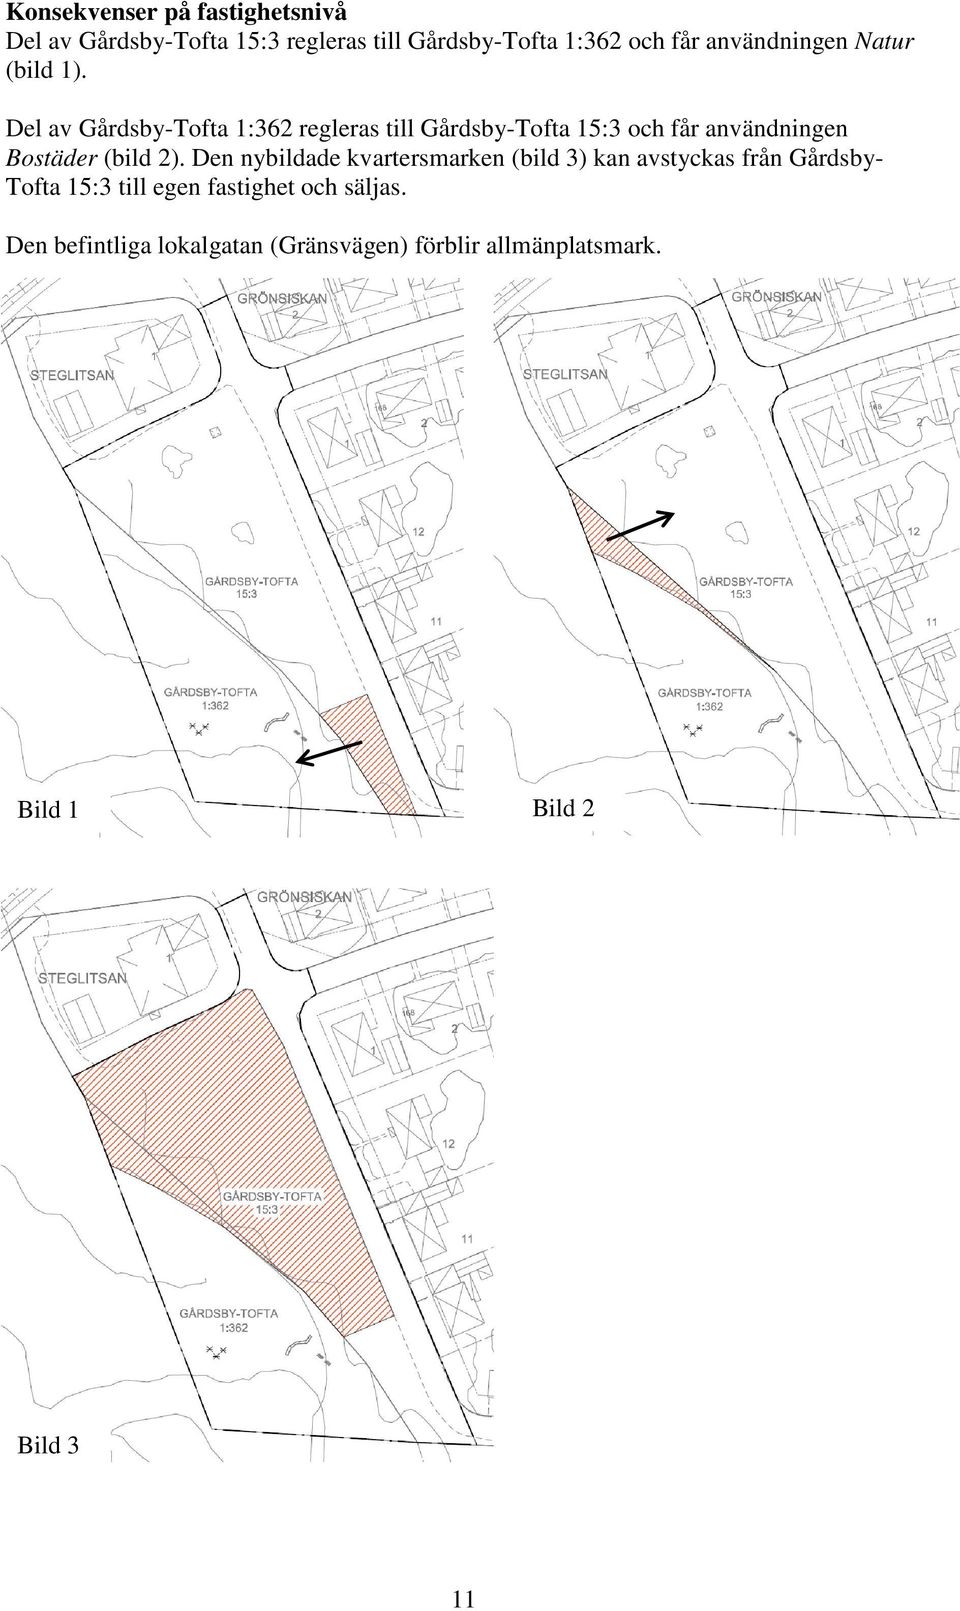 Del av Gårdsby-Tofta 1:362 regleras till Gårdsby-Tofta 15:3 och får användningen Bostäder (bild 2).